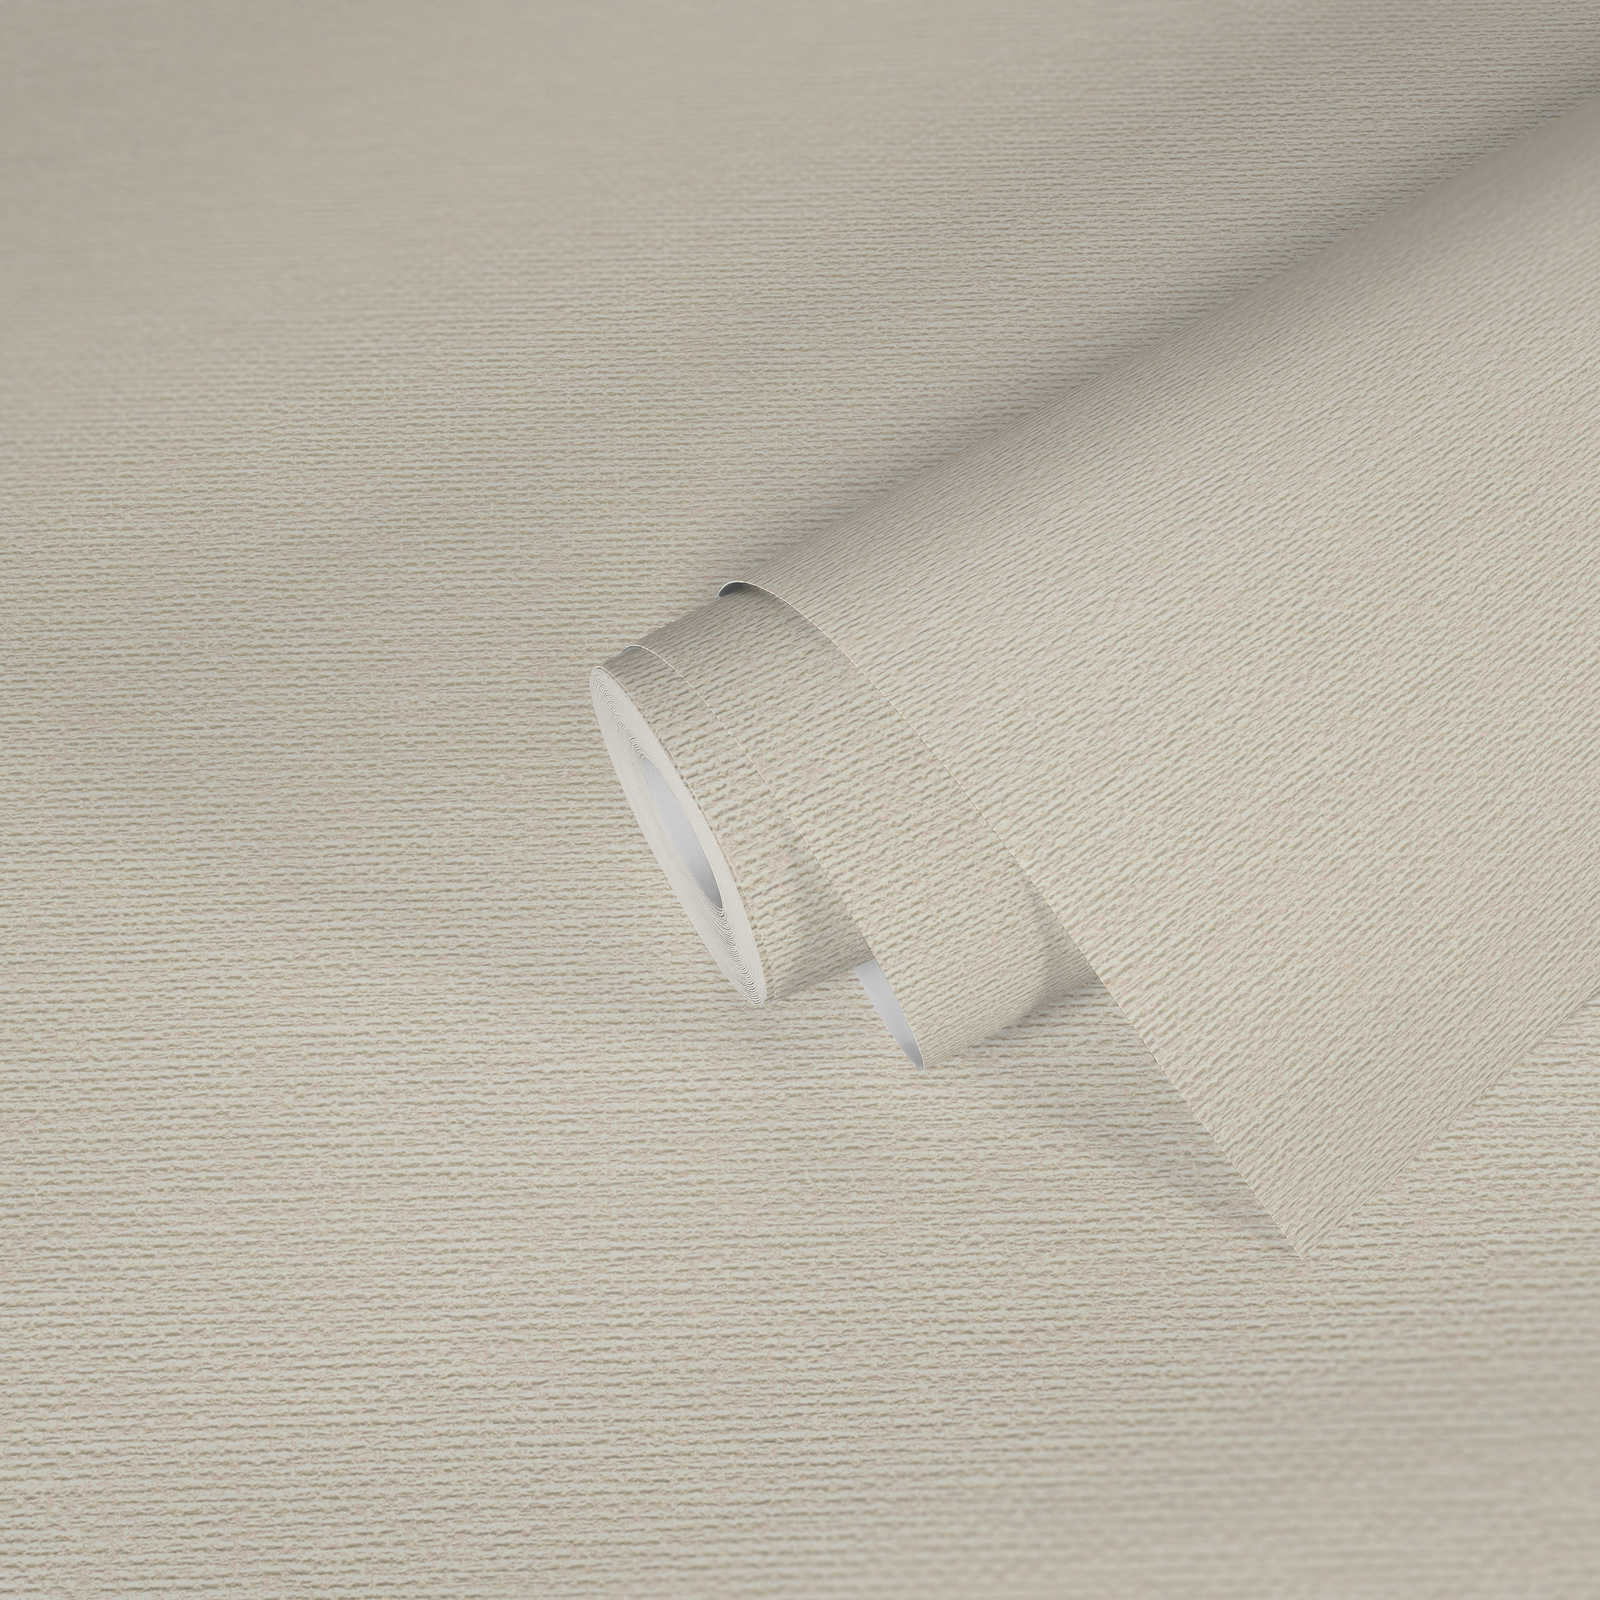             Papier peint à structure tissée de style scandinave - crème, blanc
        